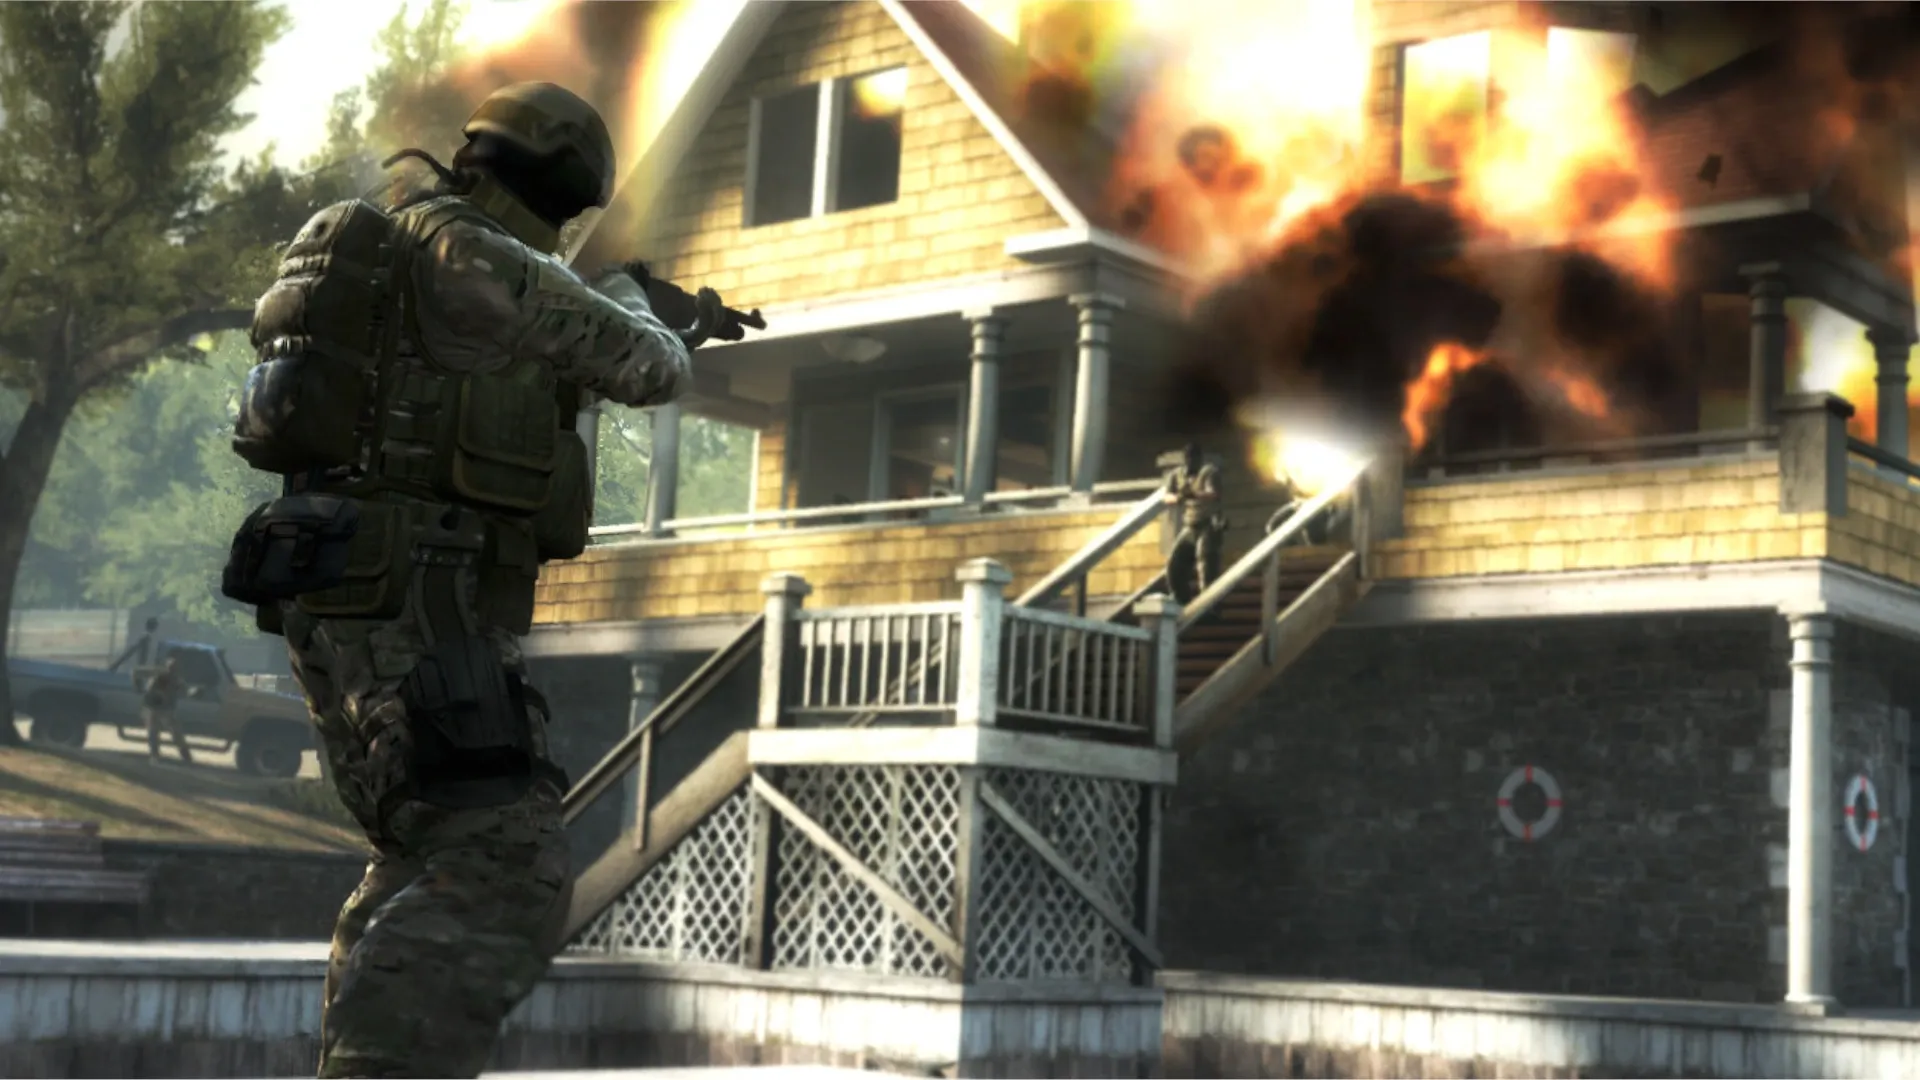 Call of Duty: Vanguard volta à Segunda Guerra com personagens fictícios  variados inspirados em figuras reais - NAVE - Blog